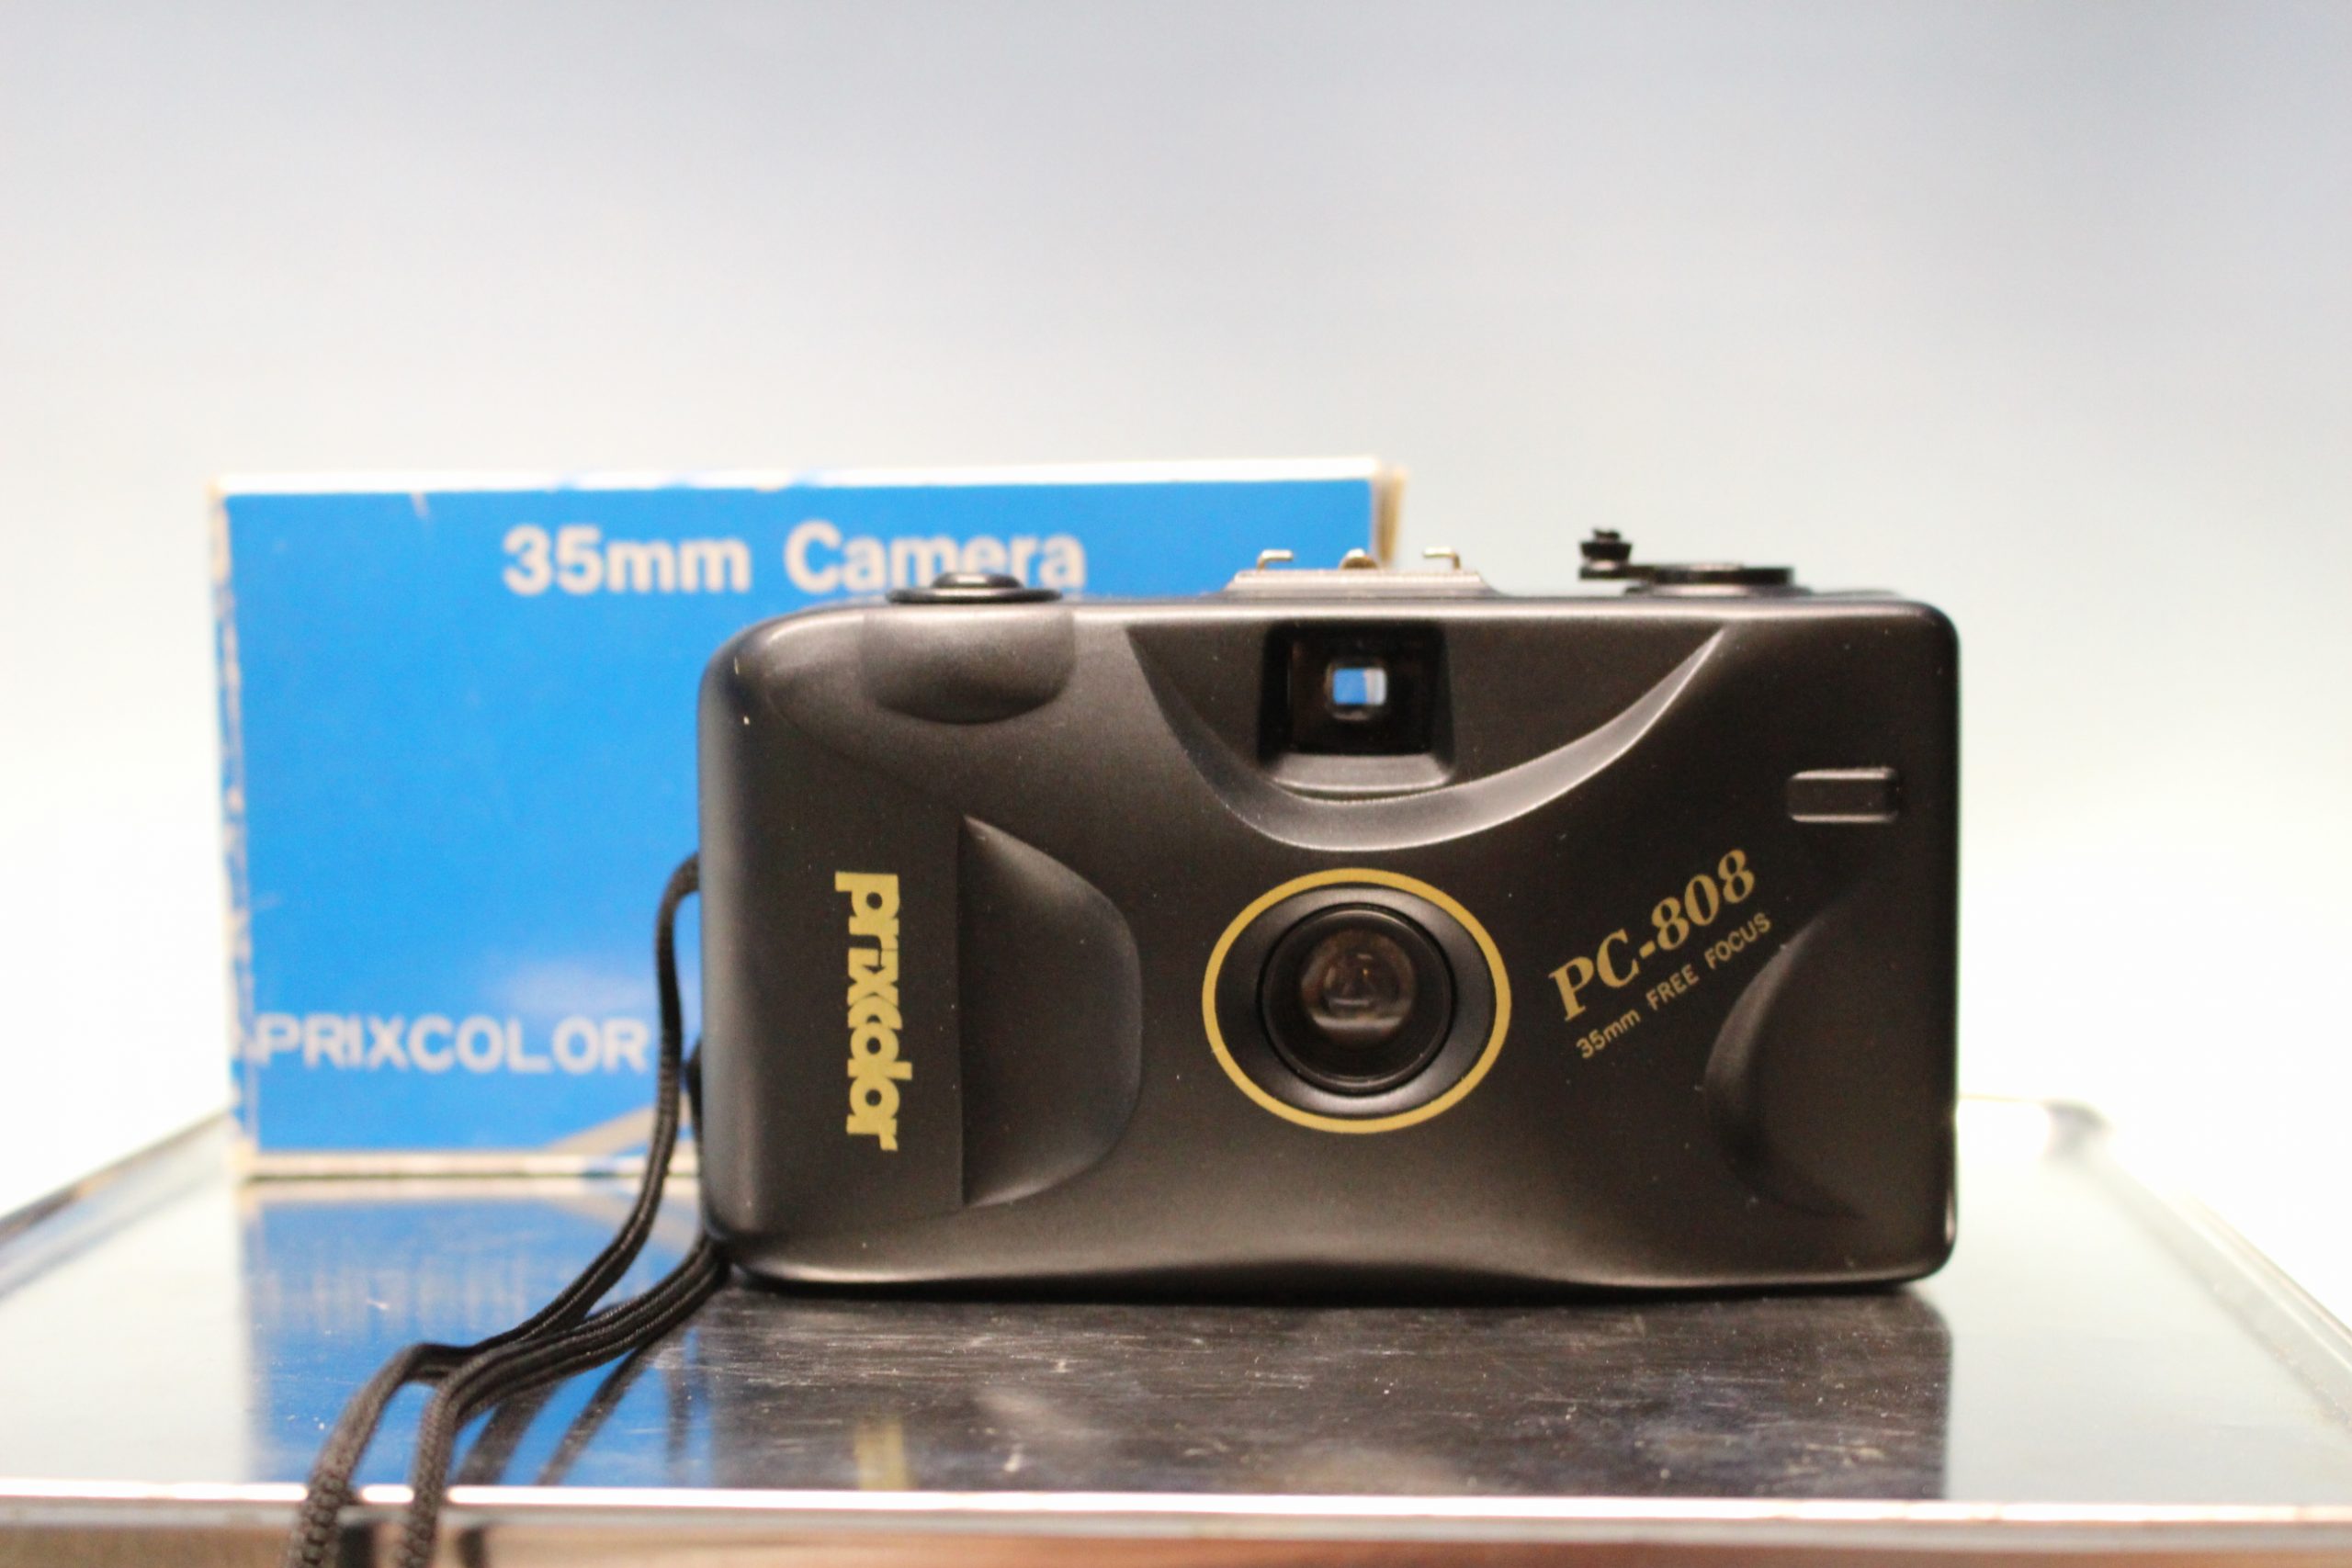 cámara analógica compacta focus free (se/caj 5- - Compra venta en